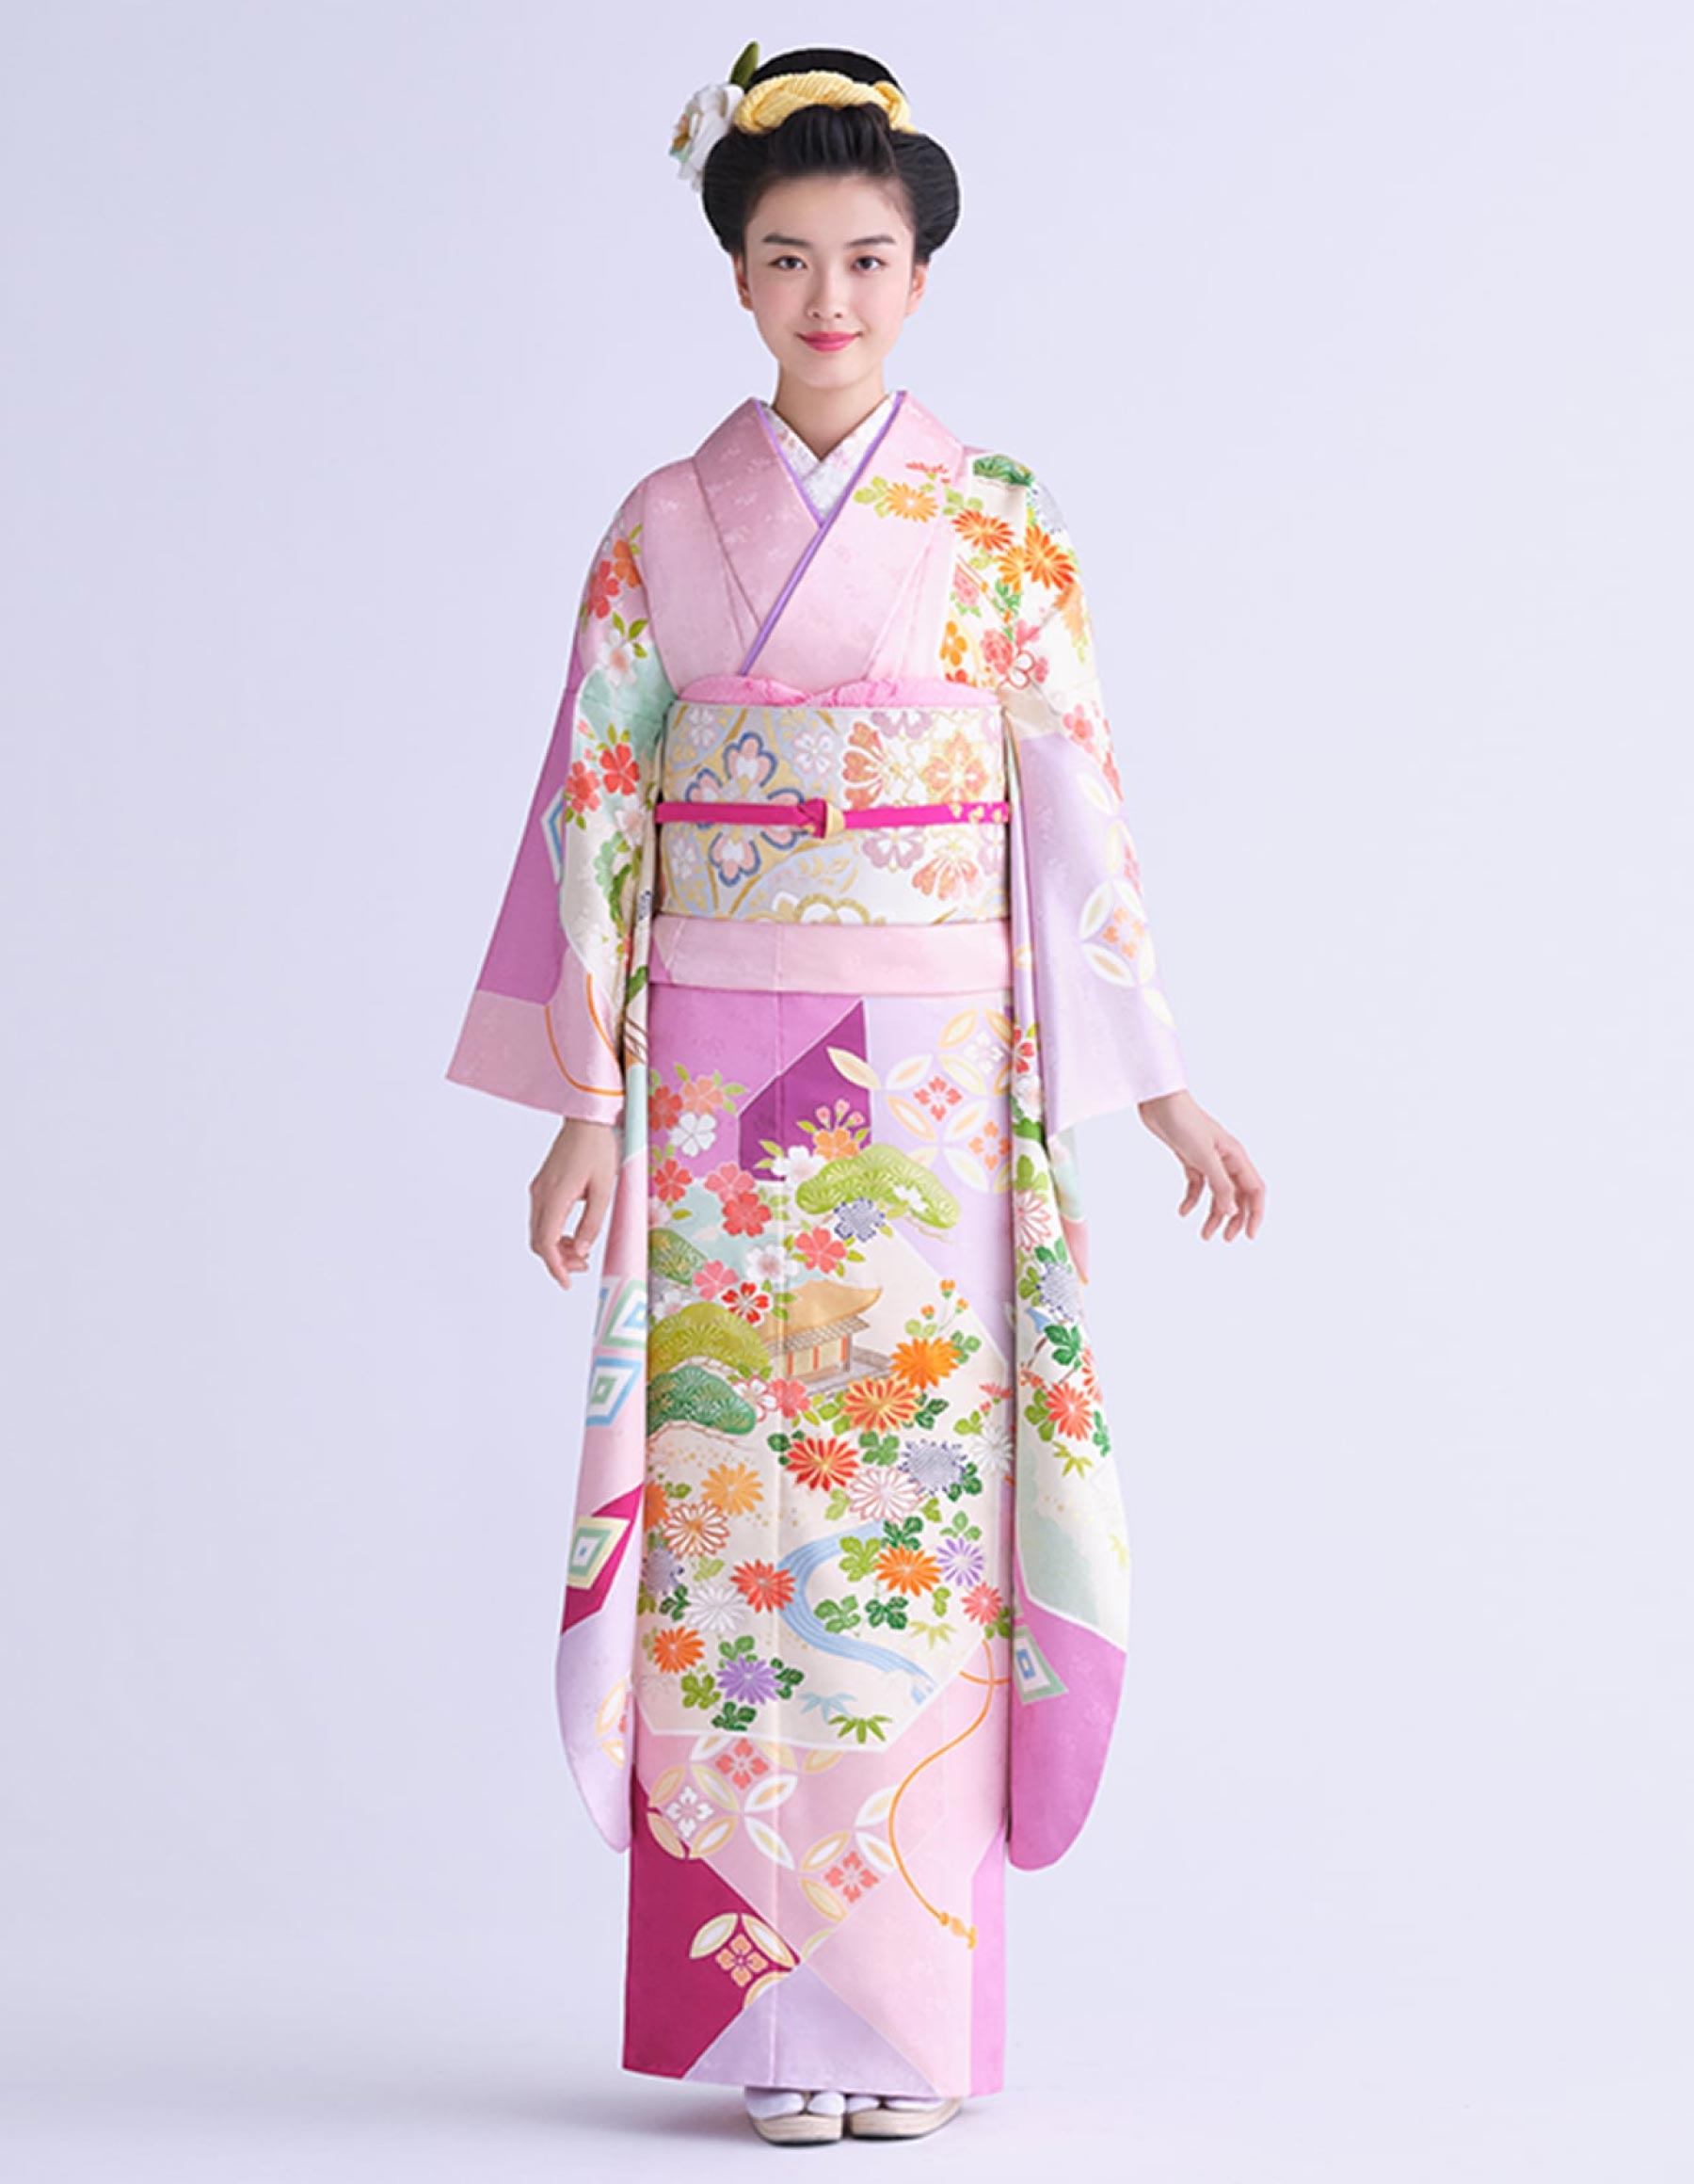 Đồ truyền thống Nhật Bản chuyên dành cho những thiếu nữ độc thân: Oofurisode (khoảng 114 cm), Chuufurisode (95-100 cm), Kofurisode (85cm)